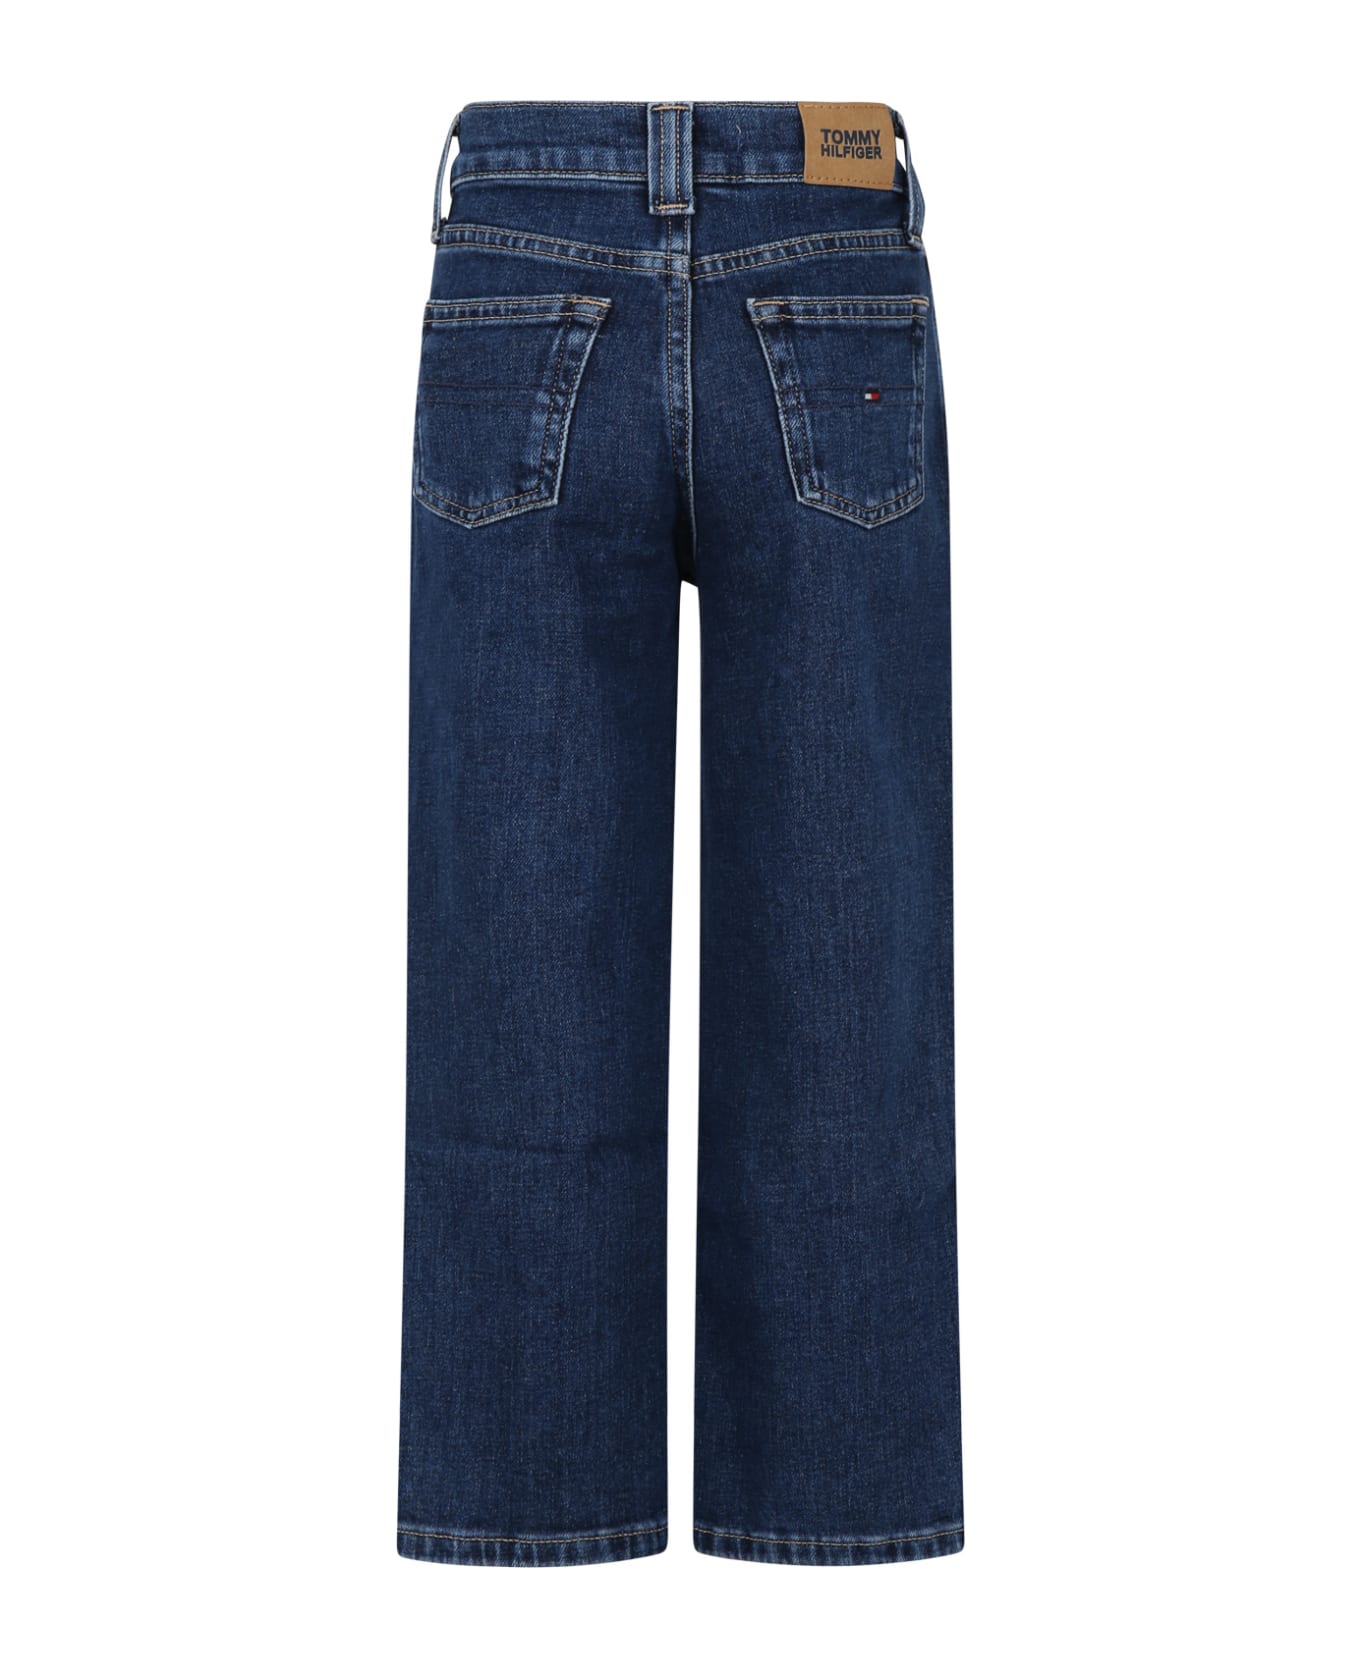 Tommy Hilfiger Denim Jeans For Girl With Logo - Denim